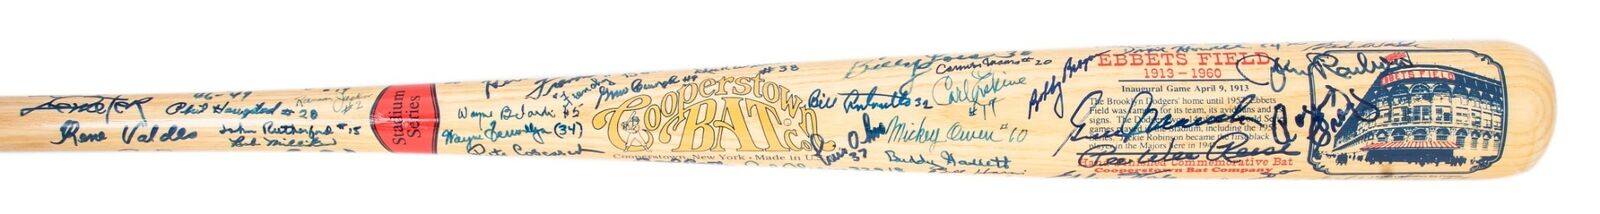 Stunning Brooklyn Dodgers Signed Bat 86 Sigs! Beckett Sandy Koufax Vin Scully